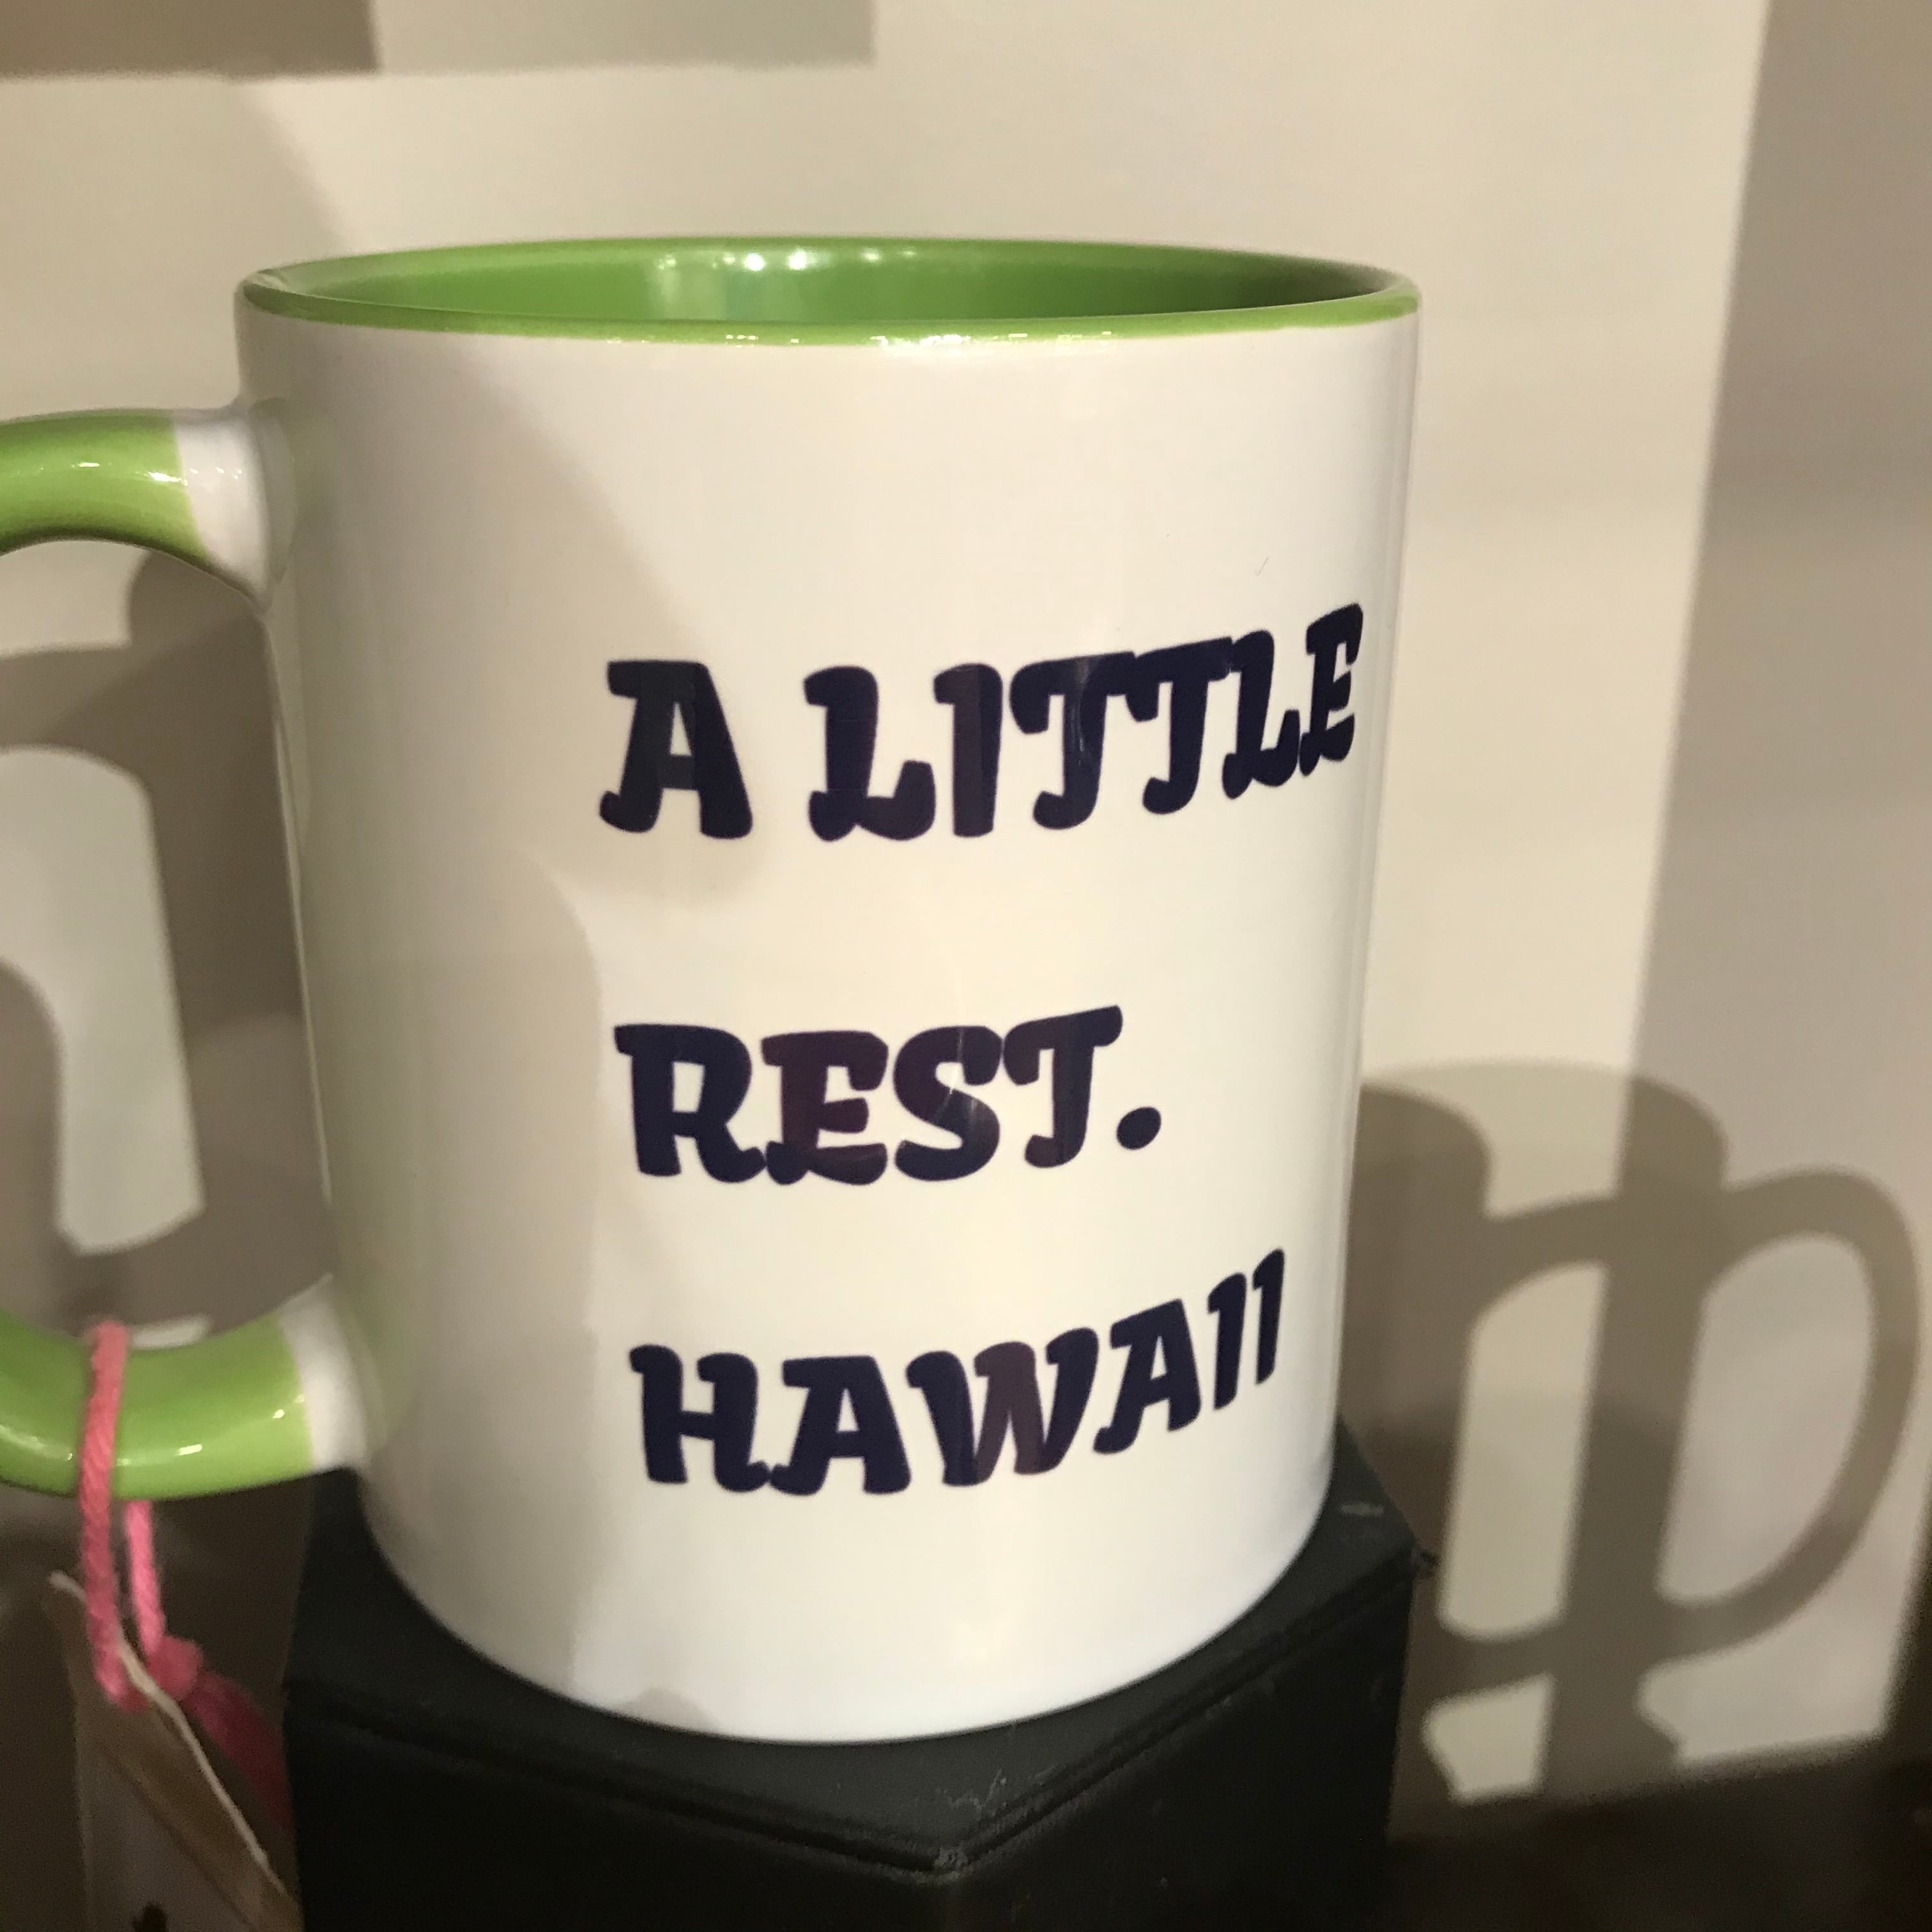 スヌーピー ハワイ限定 マグカップご確認お願い致します - コーヒー